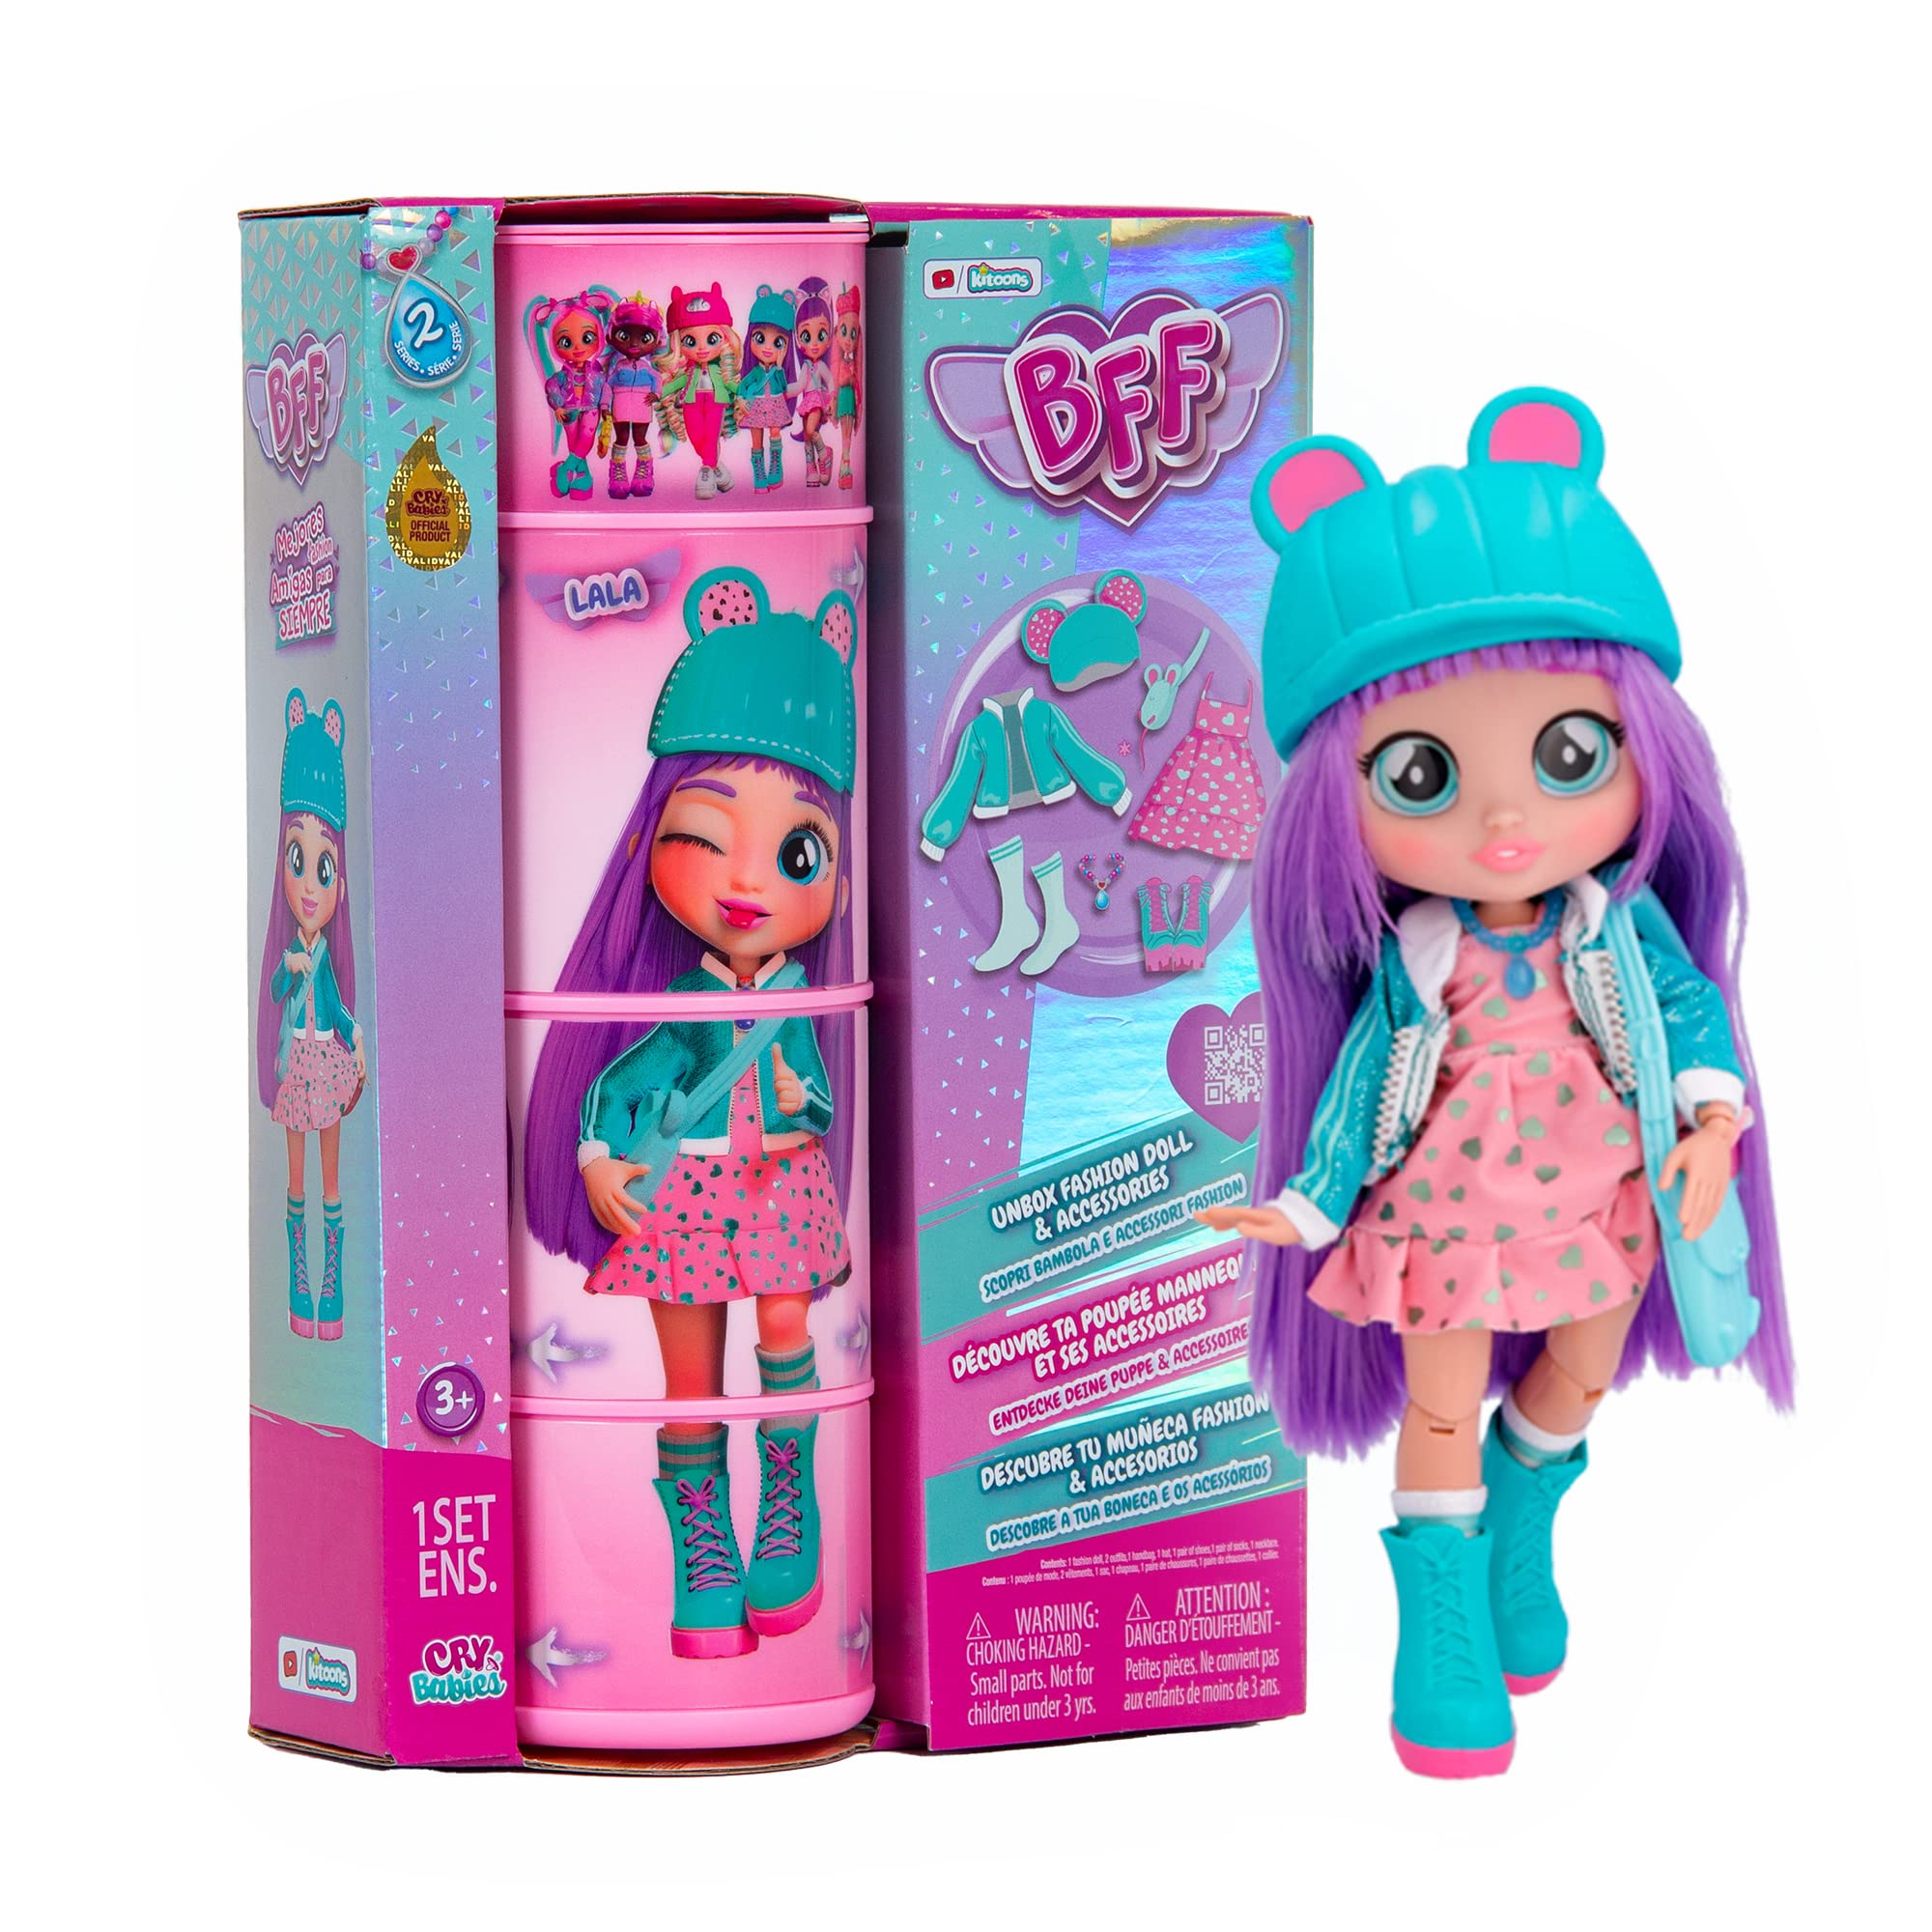 Merchandising Imc Toys: Cry Babies - Bff - Series 2 Lala NUOVO SIGILLATO, EDIZIONE DEL 15/03/2023 SUBITO DISPONIBILE